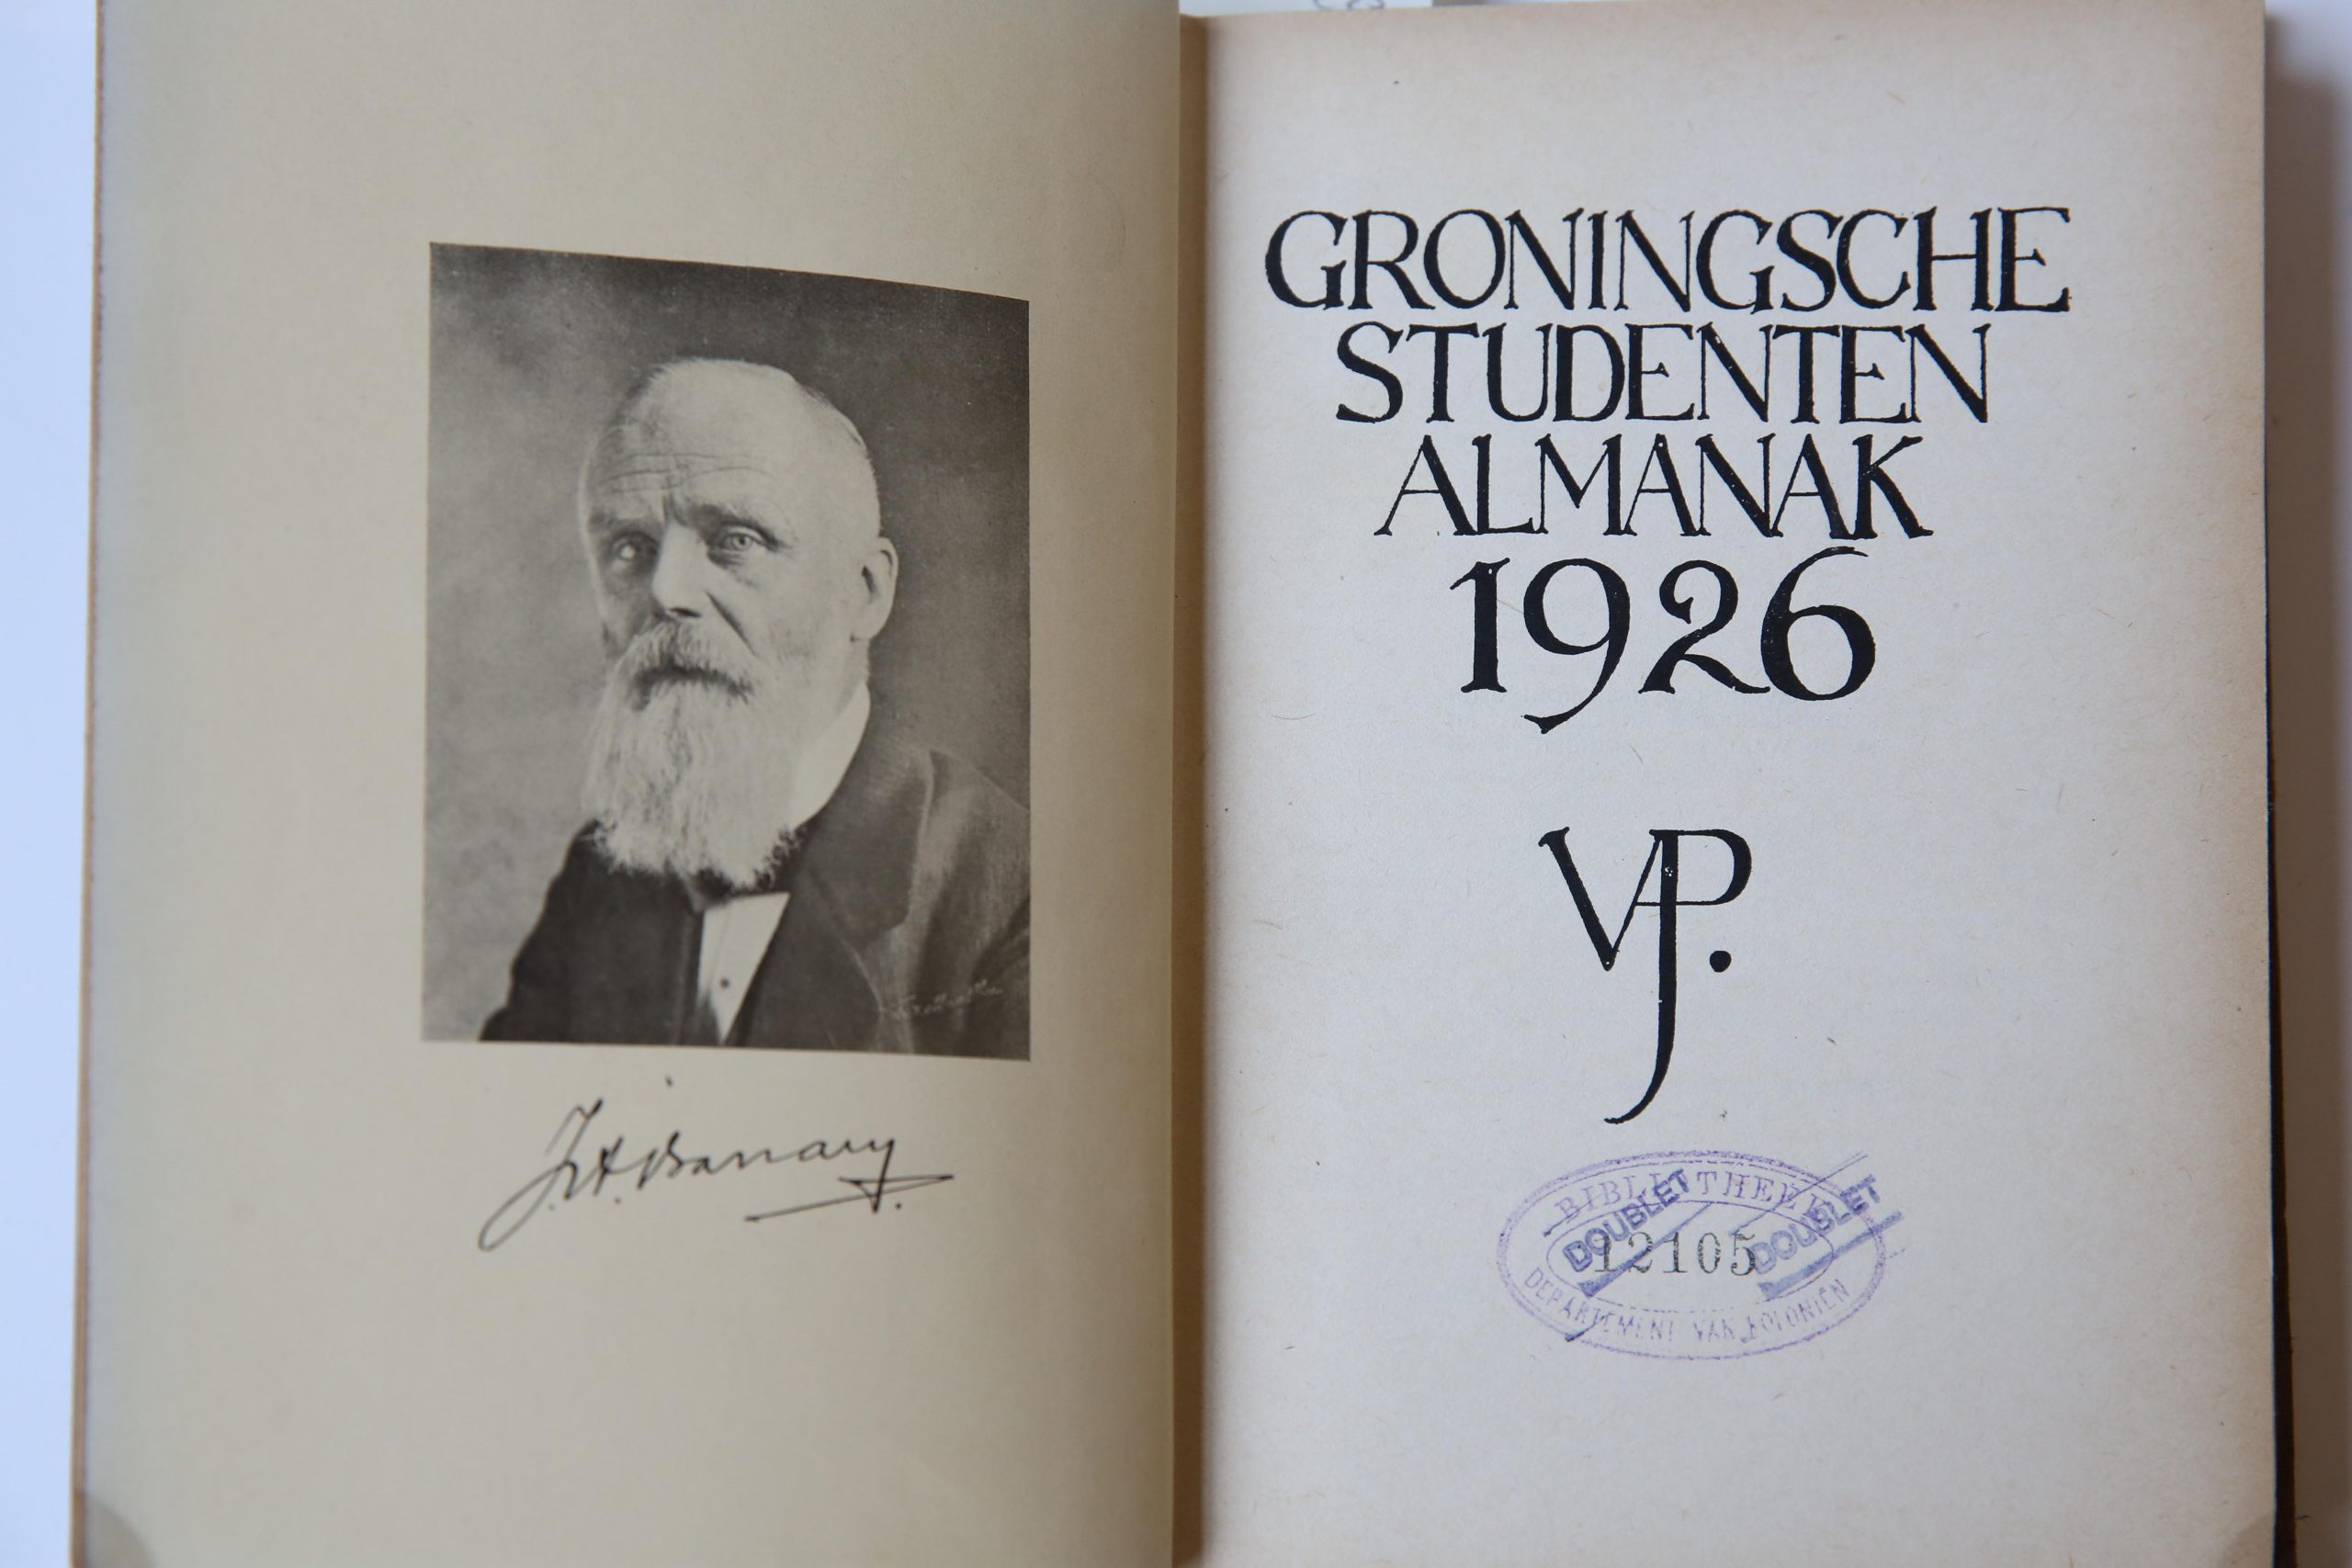 Groninger studenten Almanak voor het jaar 1926, Groningsch Studentencorps Vindicat atque Polit, M. De Waal Groningen 1925, 271 pp. Text in Dutch.